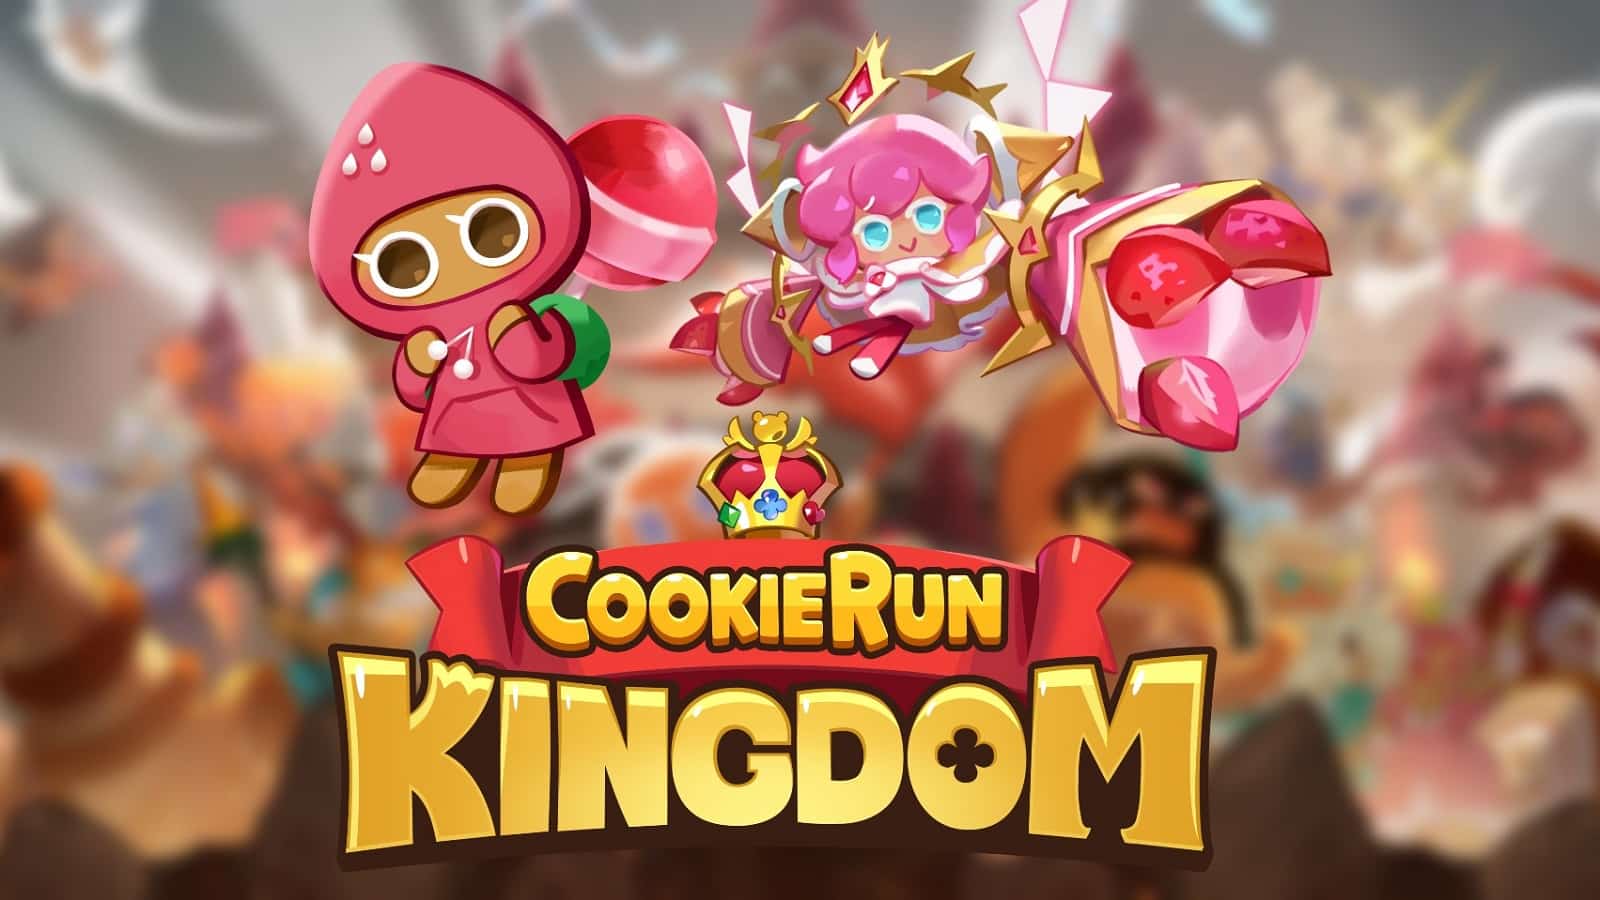 Kukisi Run Kingdom Sitiroberi Cookies